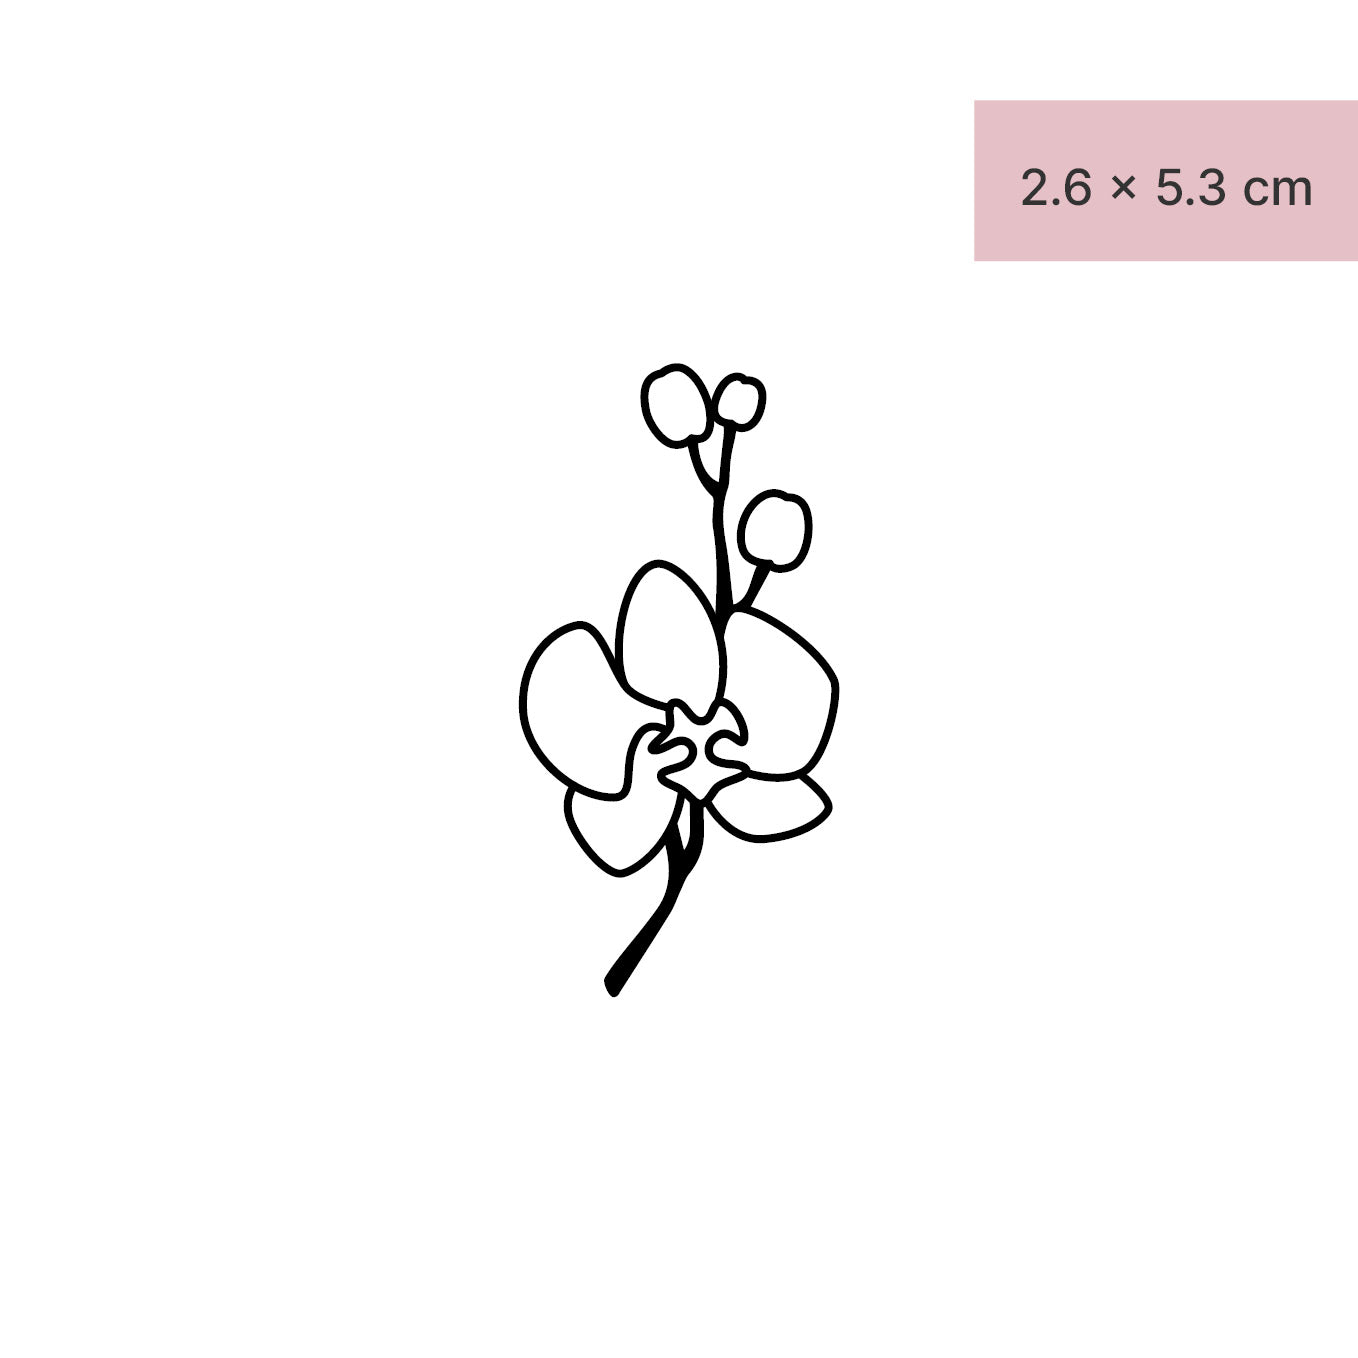 Schöne Orchidee Tattoo von minink, der Marke für temporäre Tattoos.